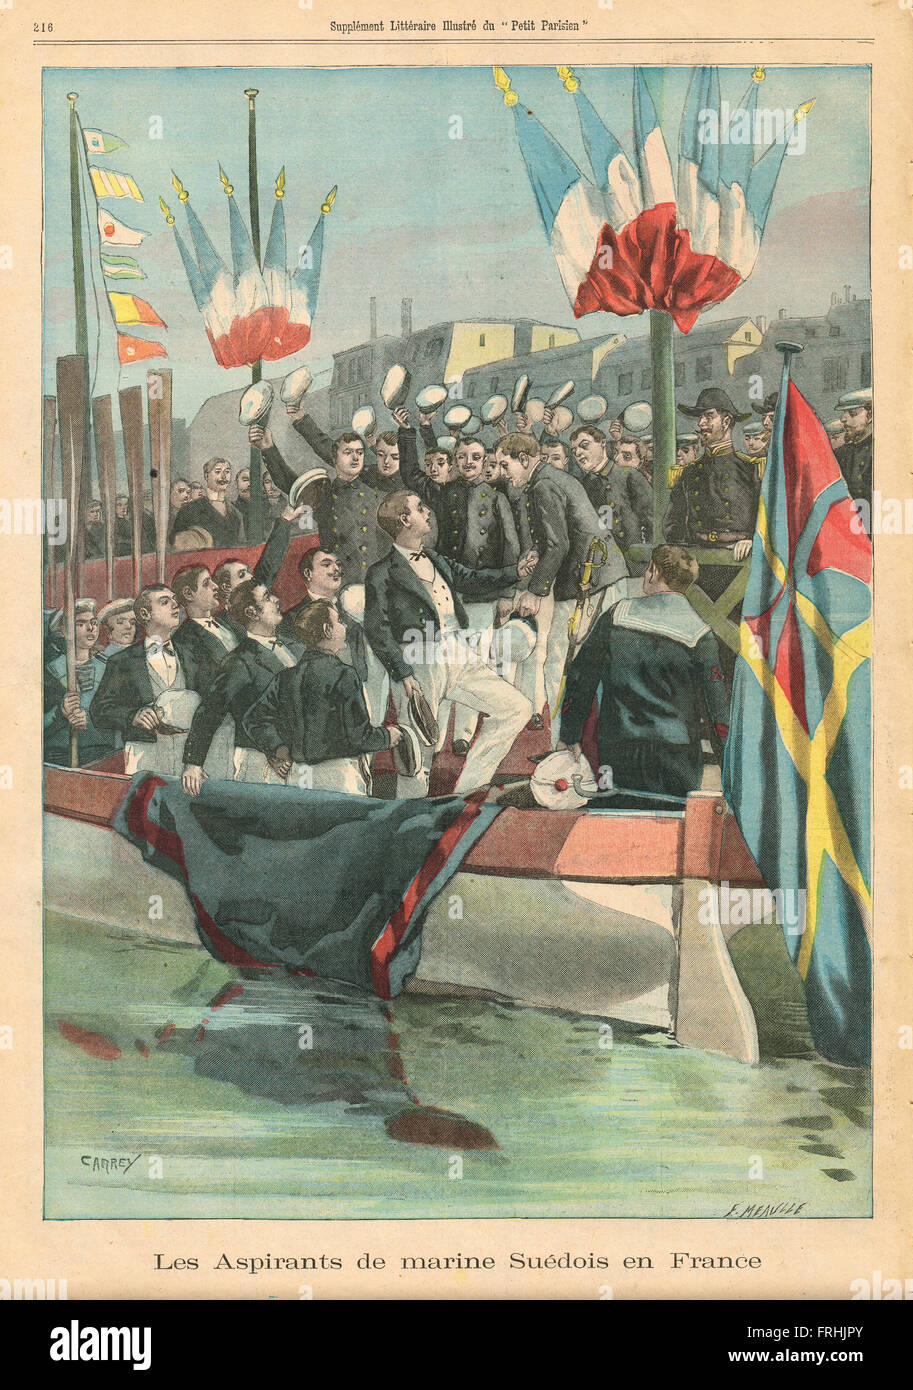 Schwedische Kadetten in Paris Frankreich 1900. Französische illustrierte Zeitung Le Petit Parisien Illustration Stockfoto